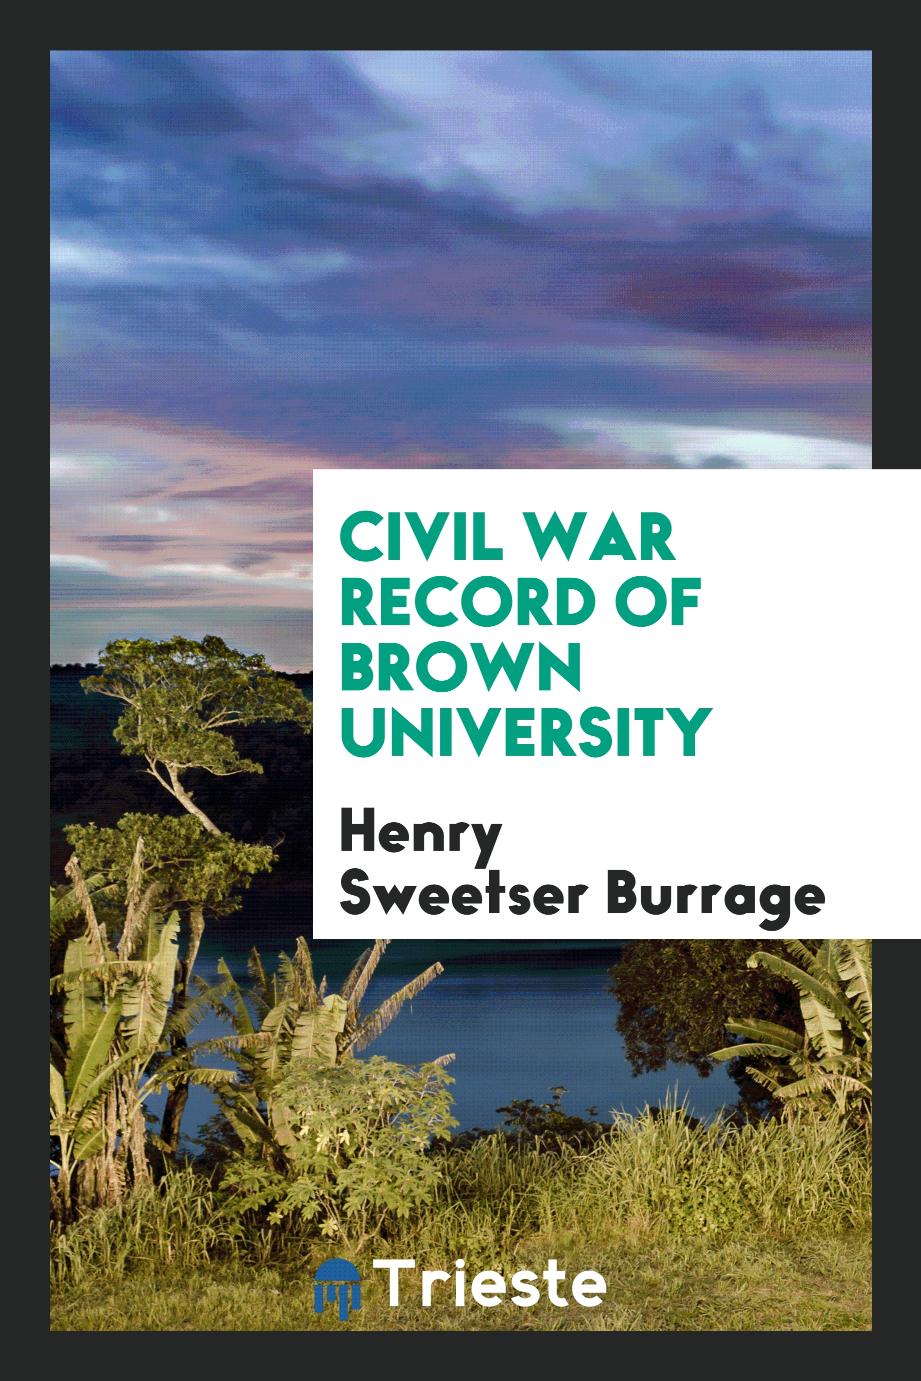 Civil war record of Brown University